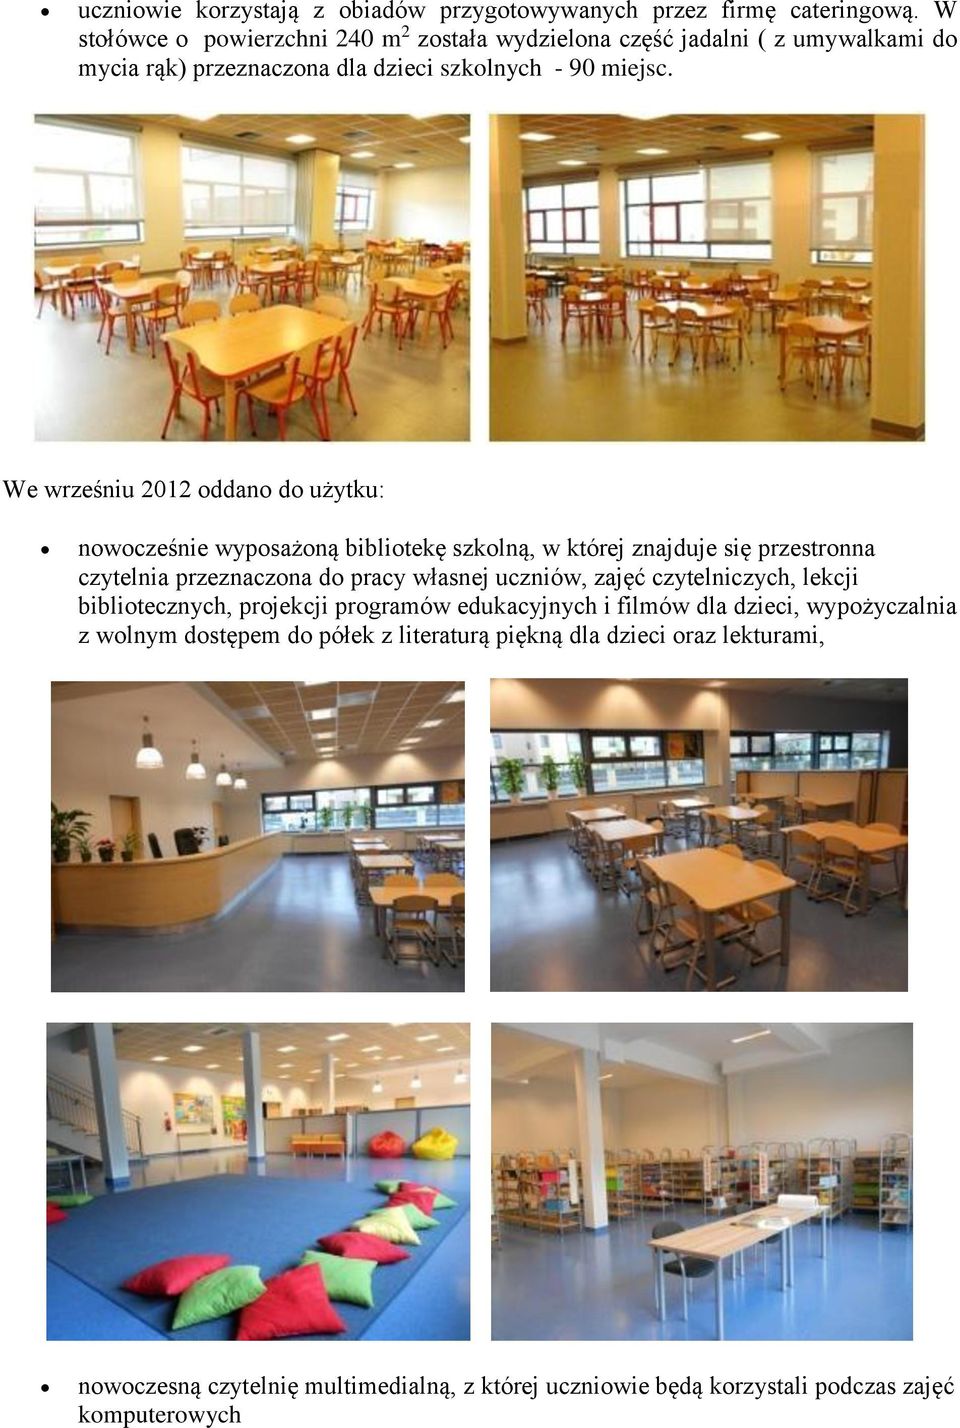 We wrześniu 2012 oddano do użytku: nowocześnie wyposażoną bibliotekę szkolną, w której znajduje się przestronna czytelnia przeznaczona do pracy własnej uczniów,